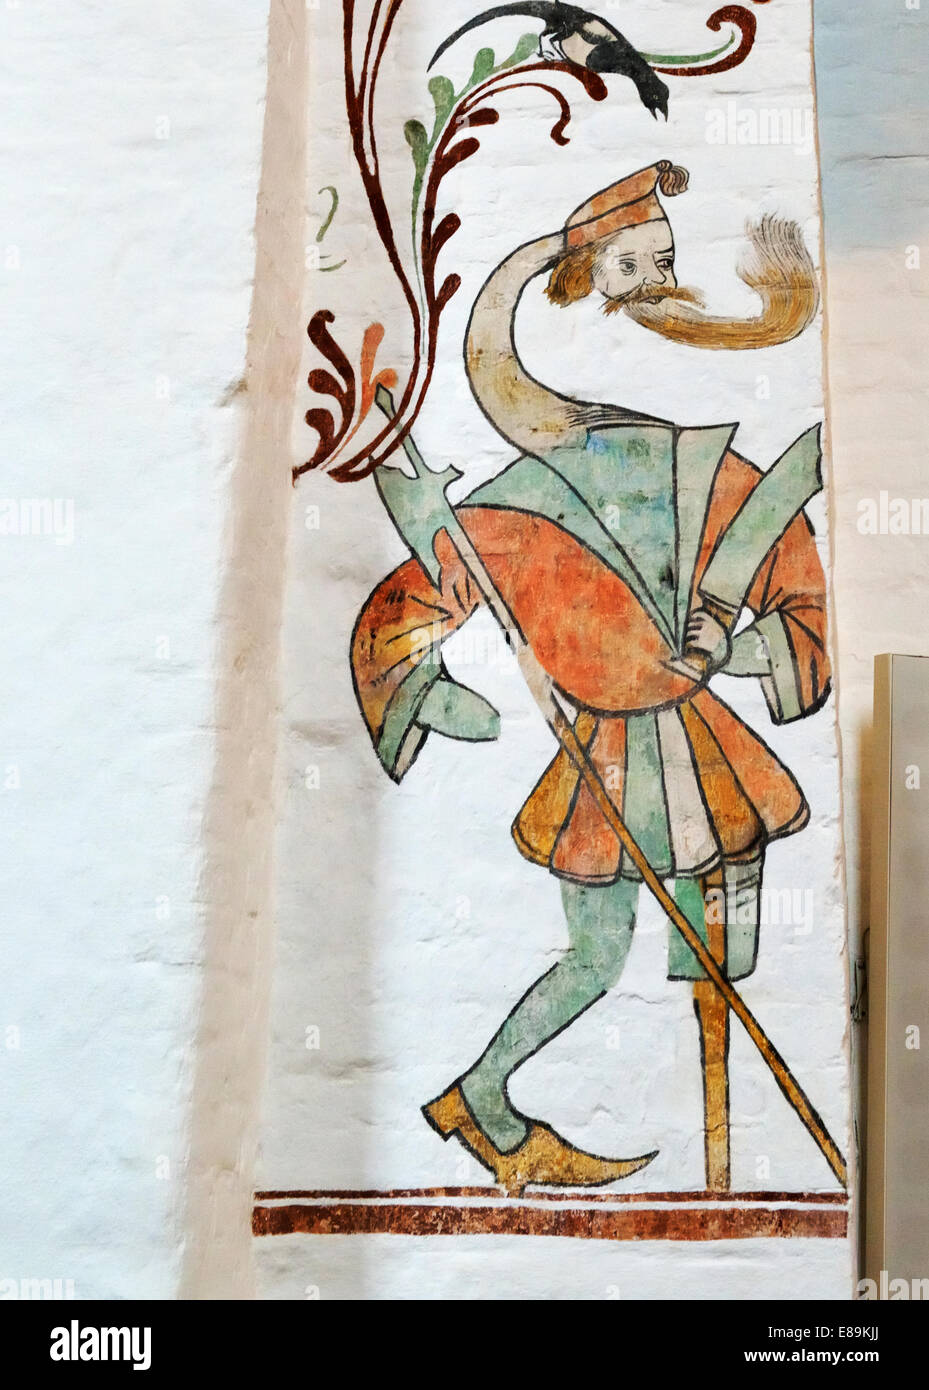 Fresque médiévale, la cathédrale d'Aarhus, Aarhus, Danemark 140817 62353  Banque D'Images